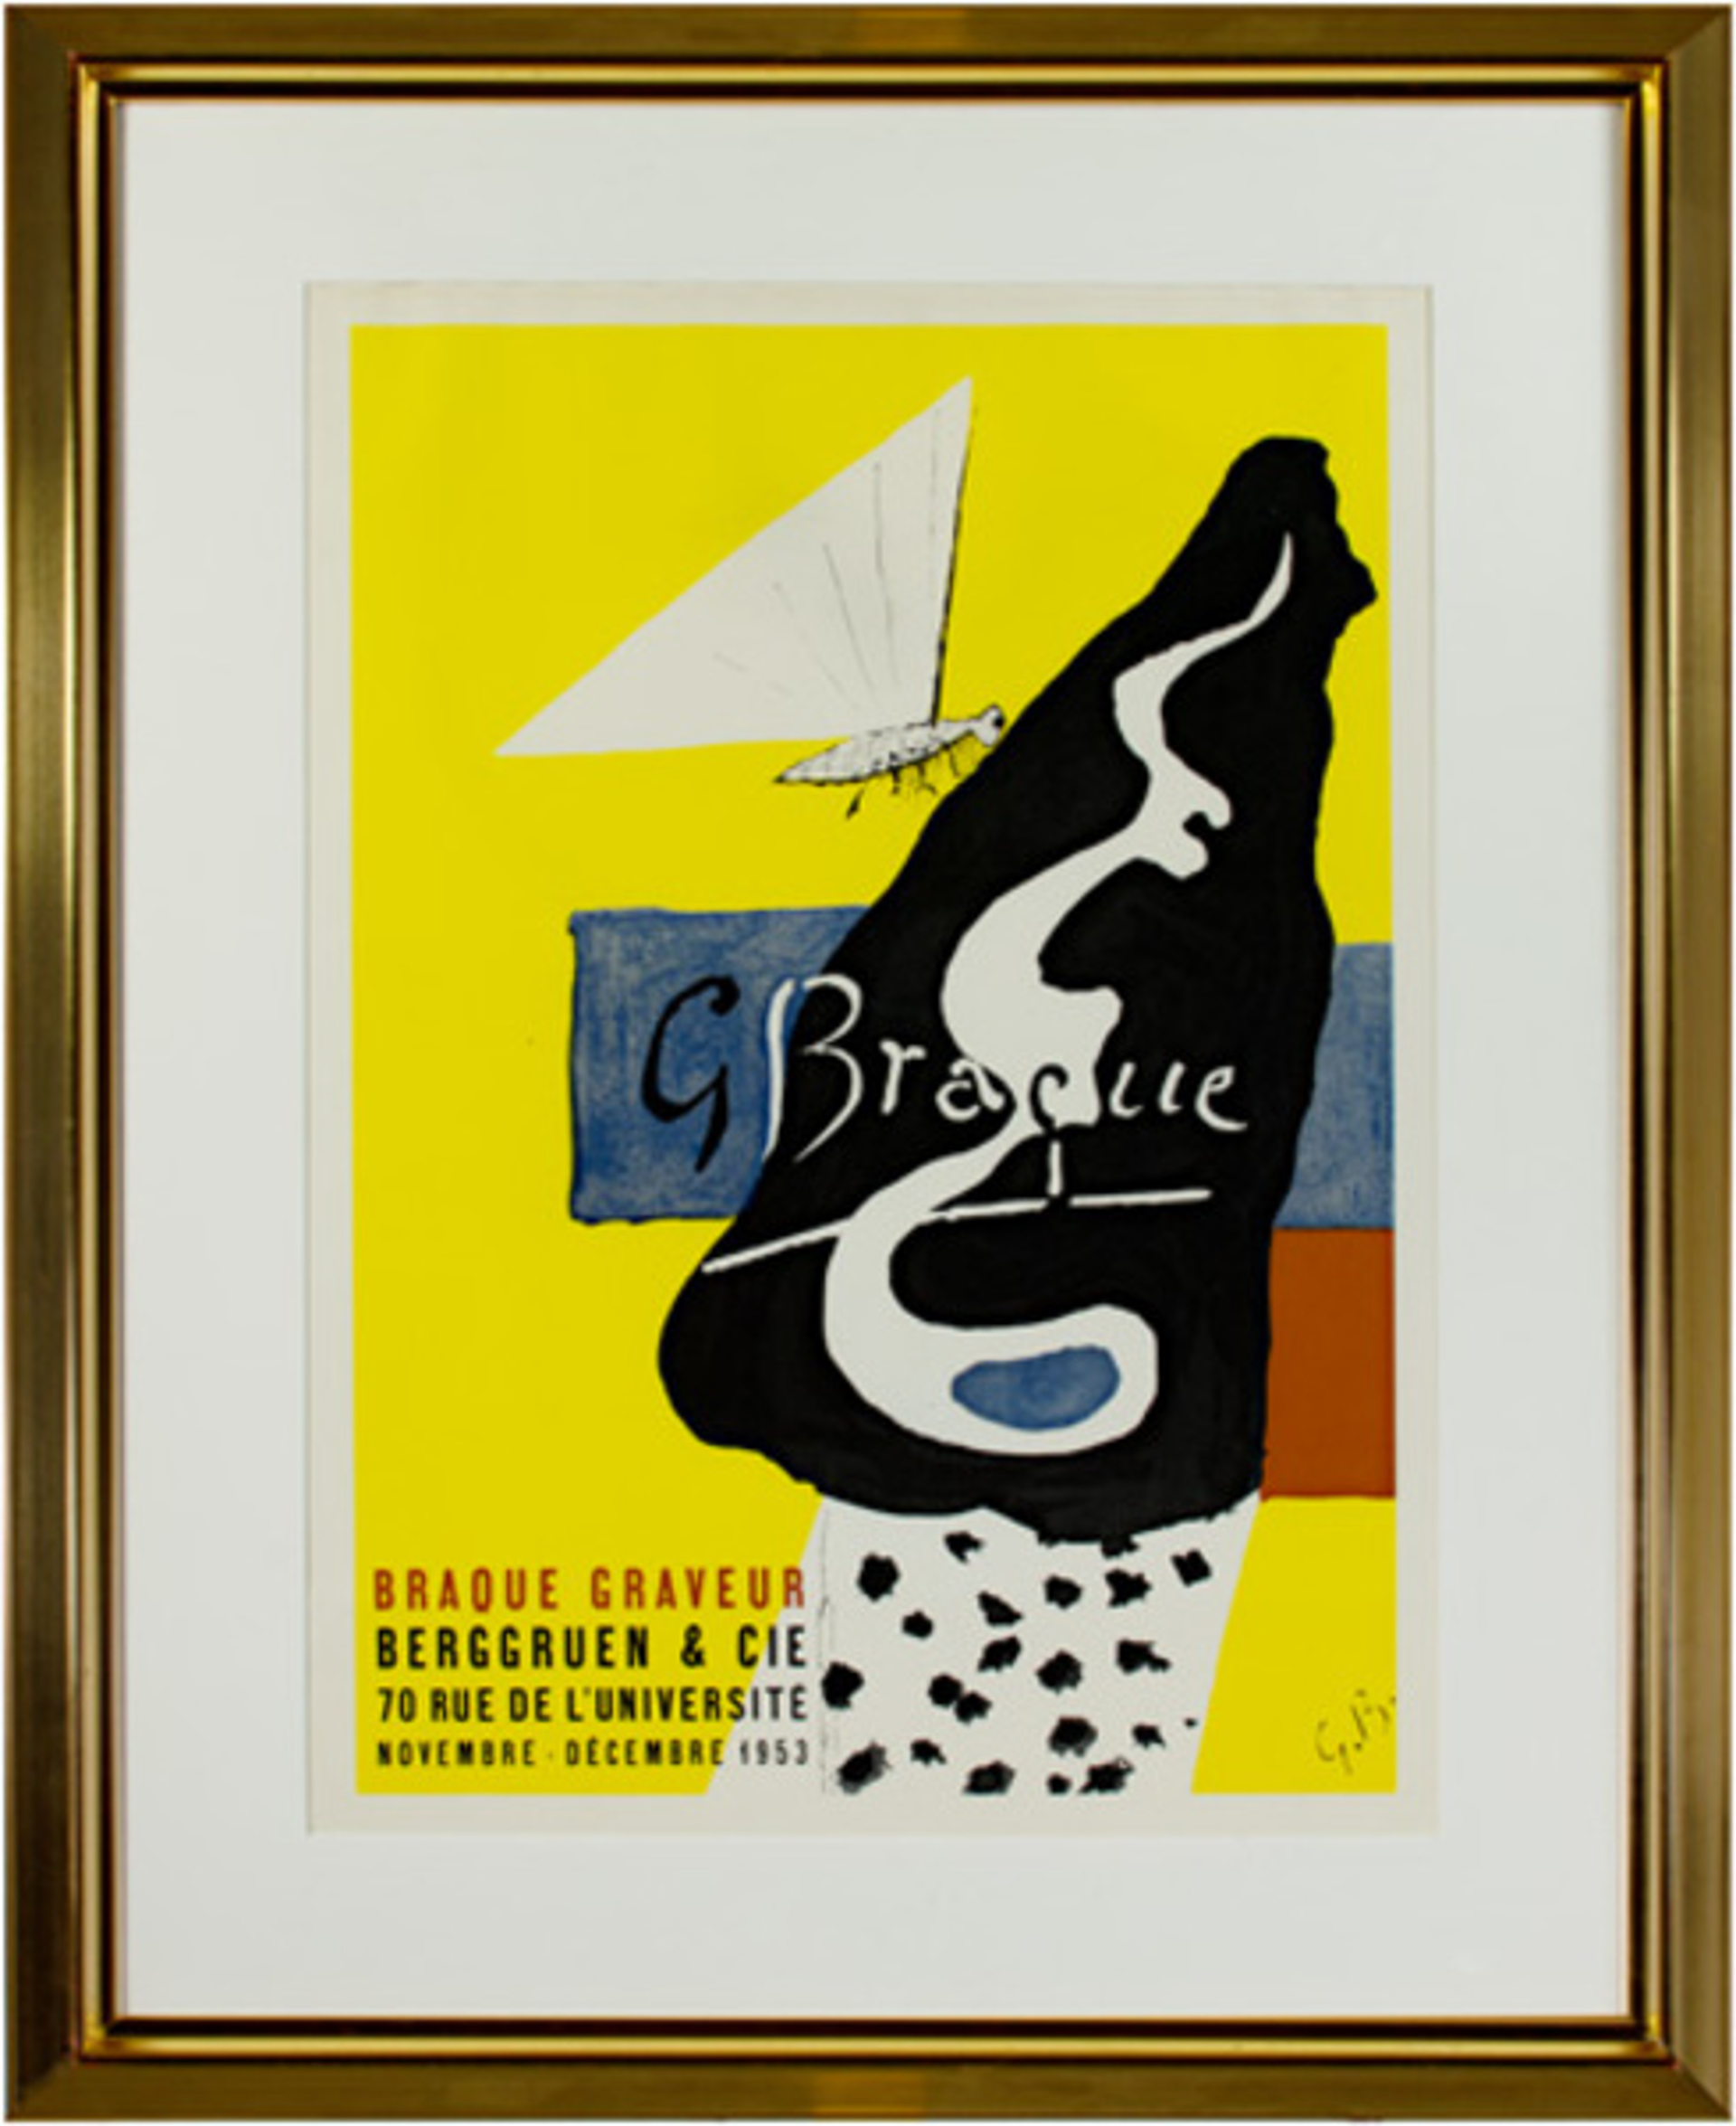 Braque Graveur by Georges Braque